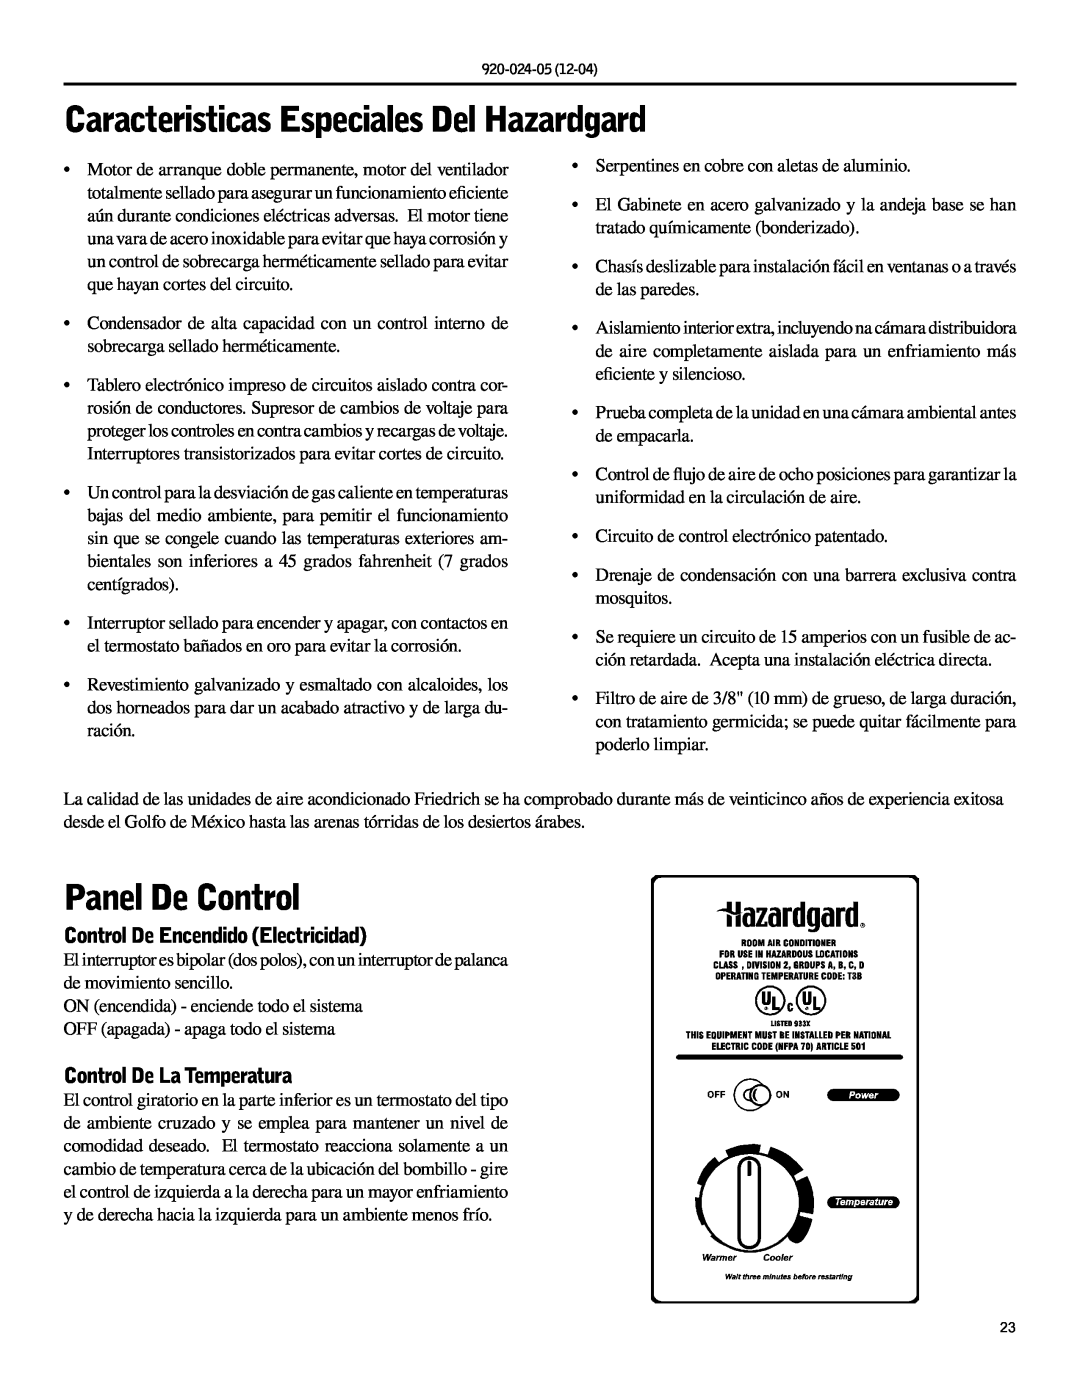 Friedrich SH20, SH15 Caracteristicas Especiales Del Hazardgard, Panel De Control, Control De Encendido Electricidad 